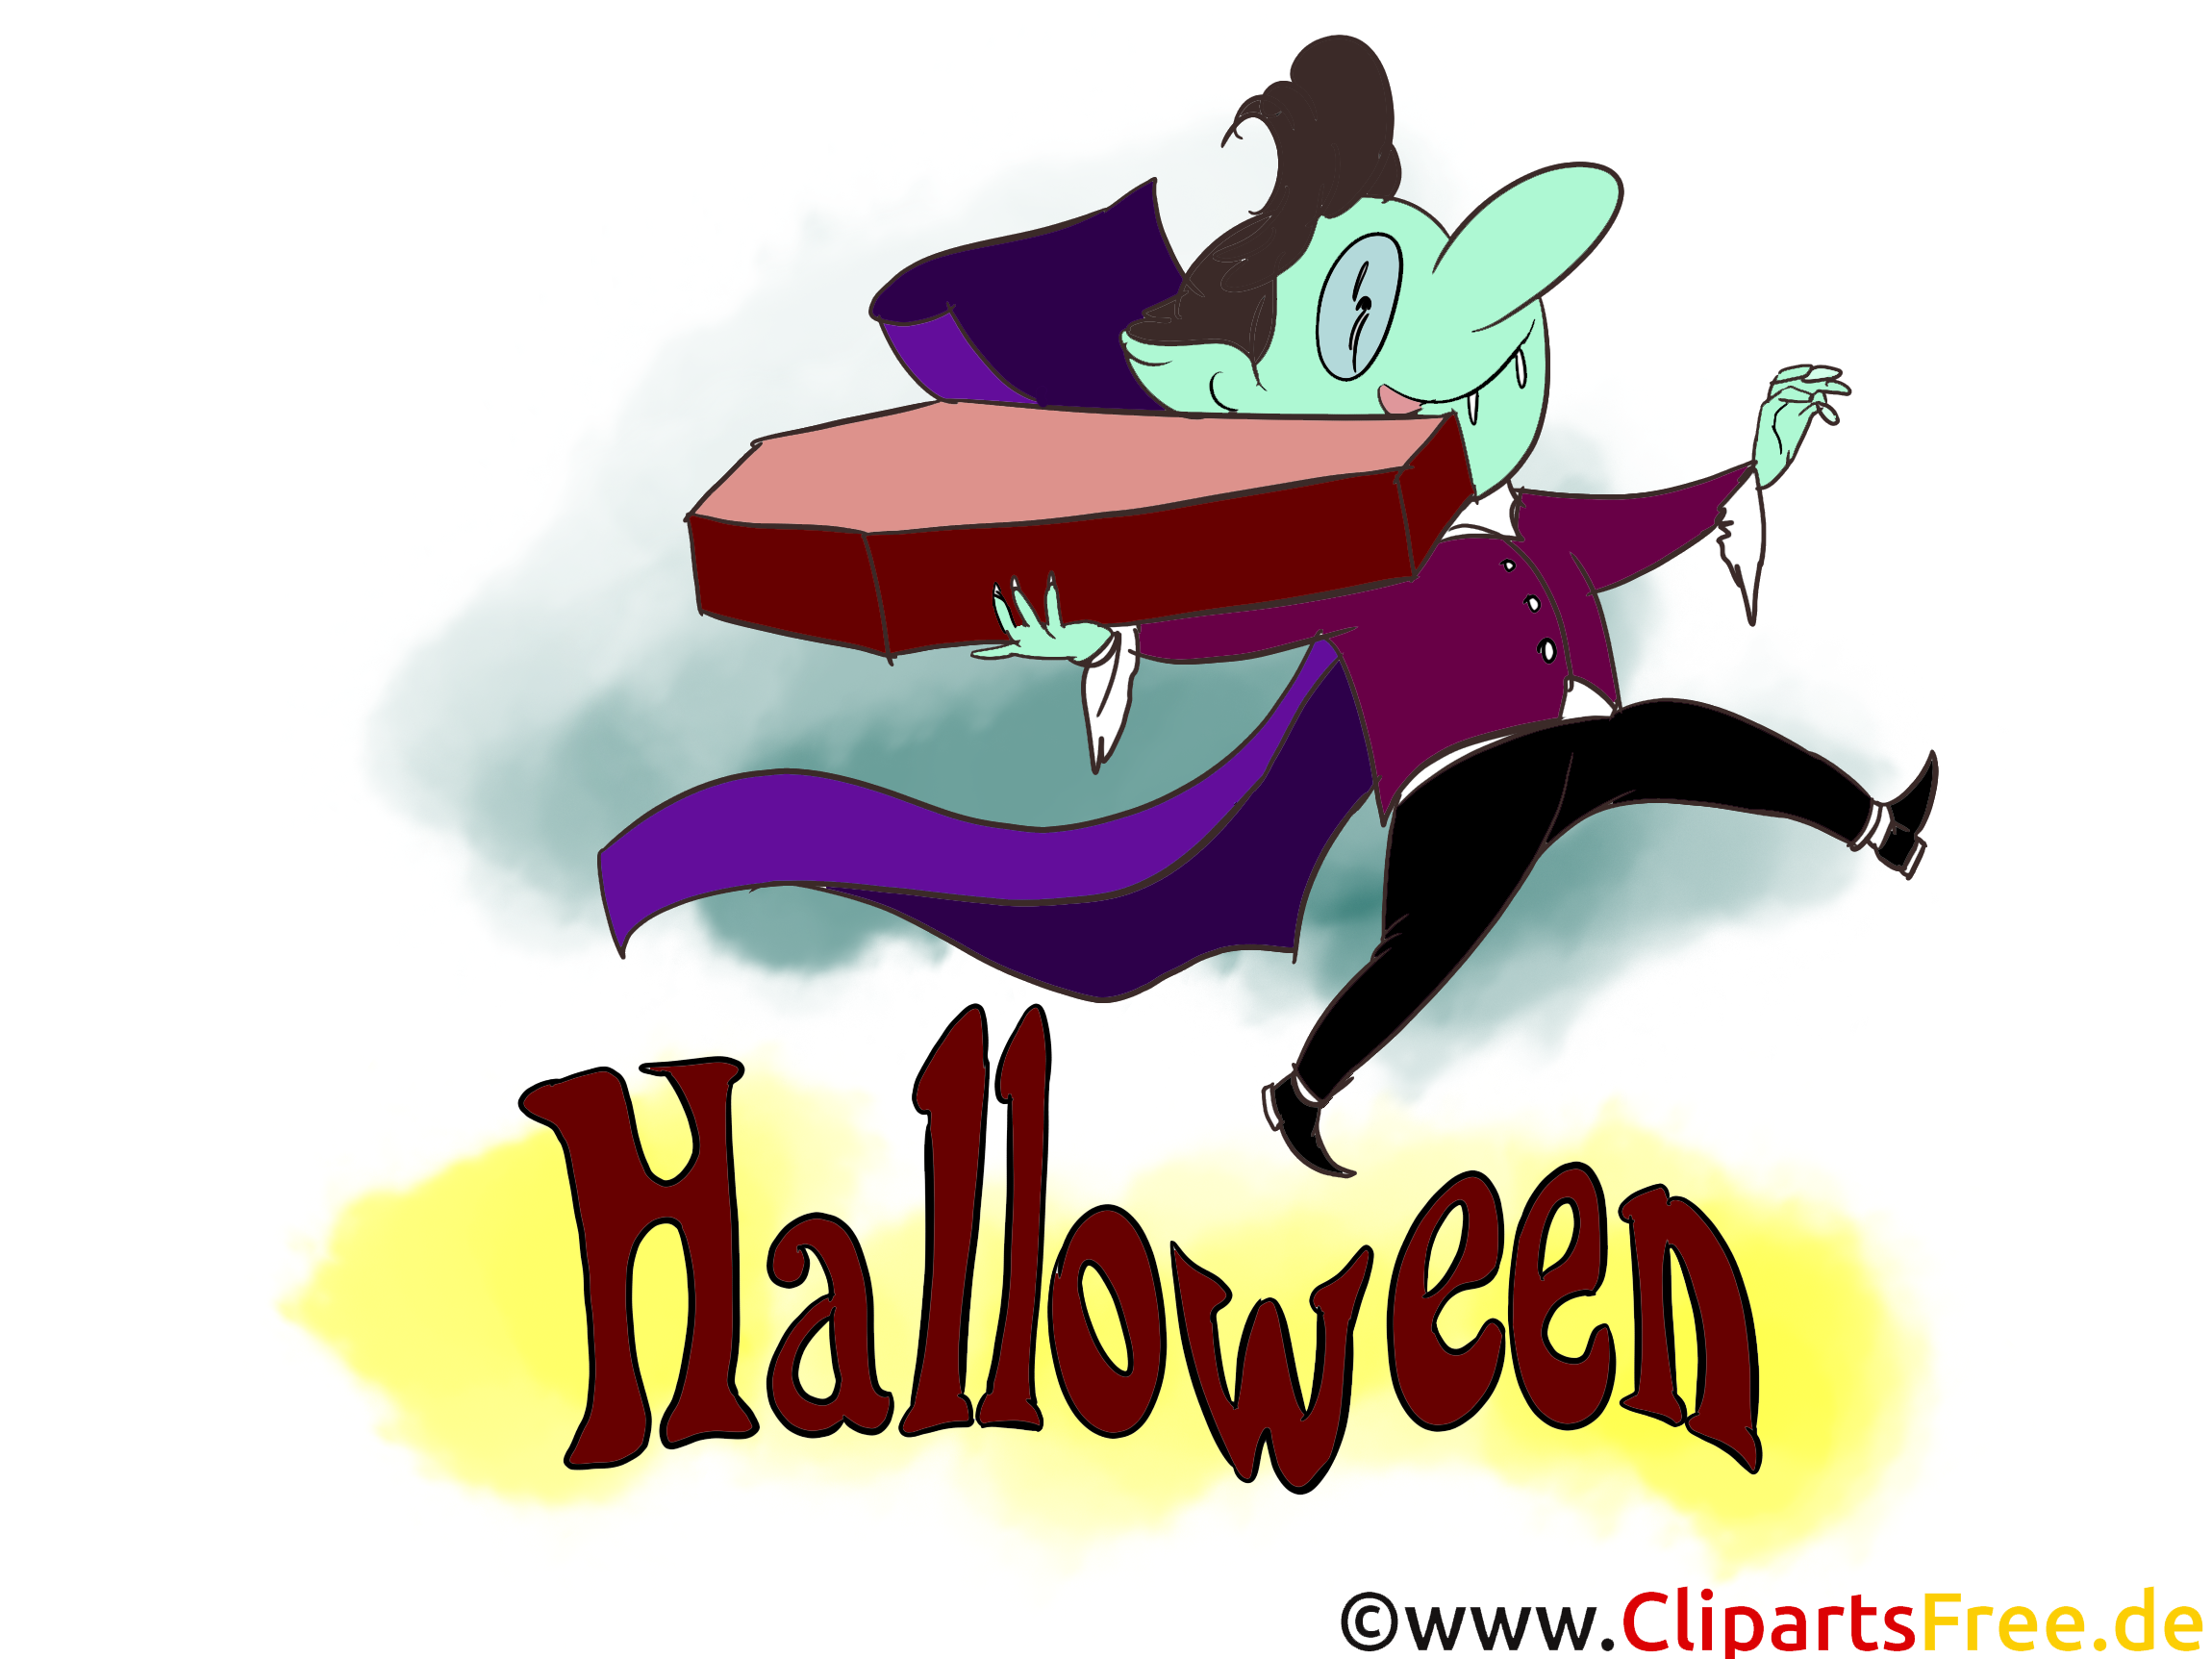 Dracula dessin à télécharger - Halloween images